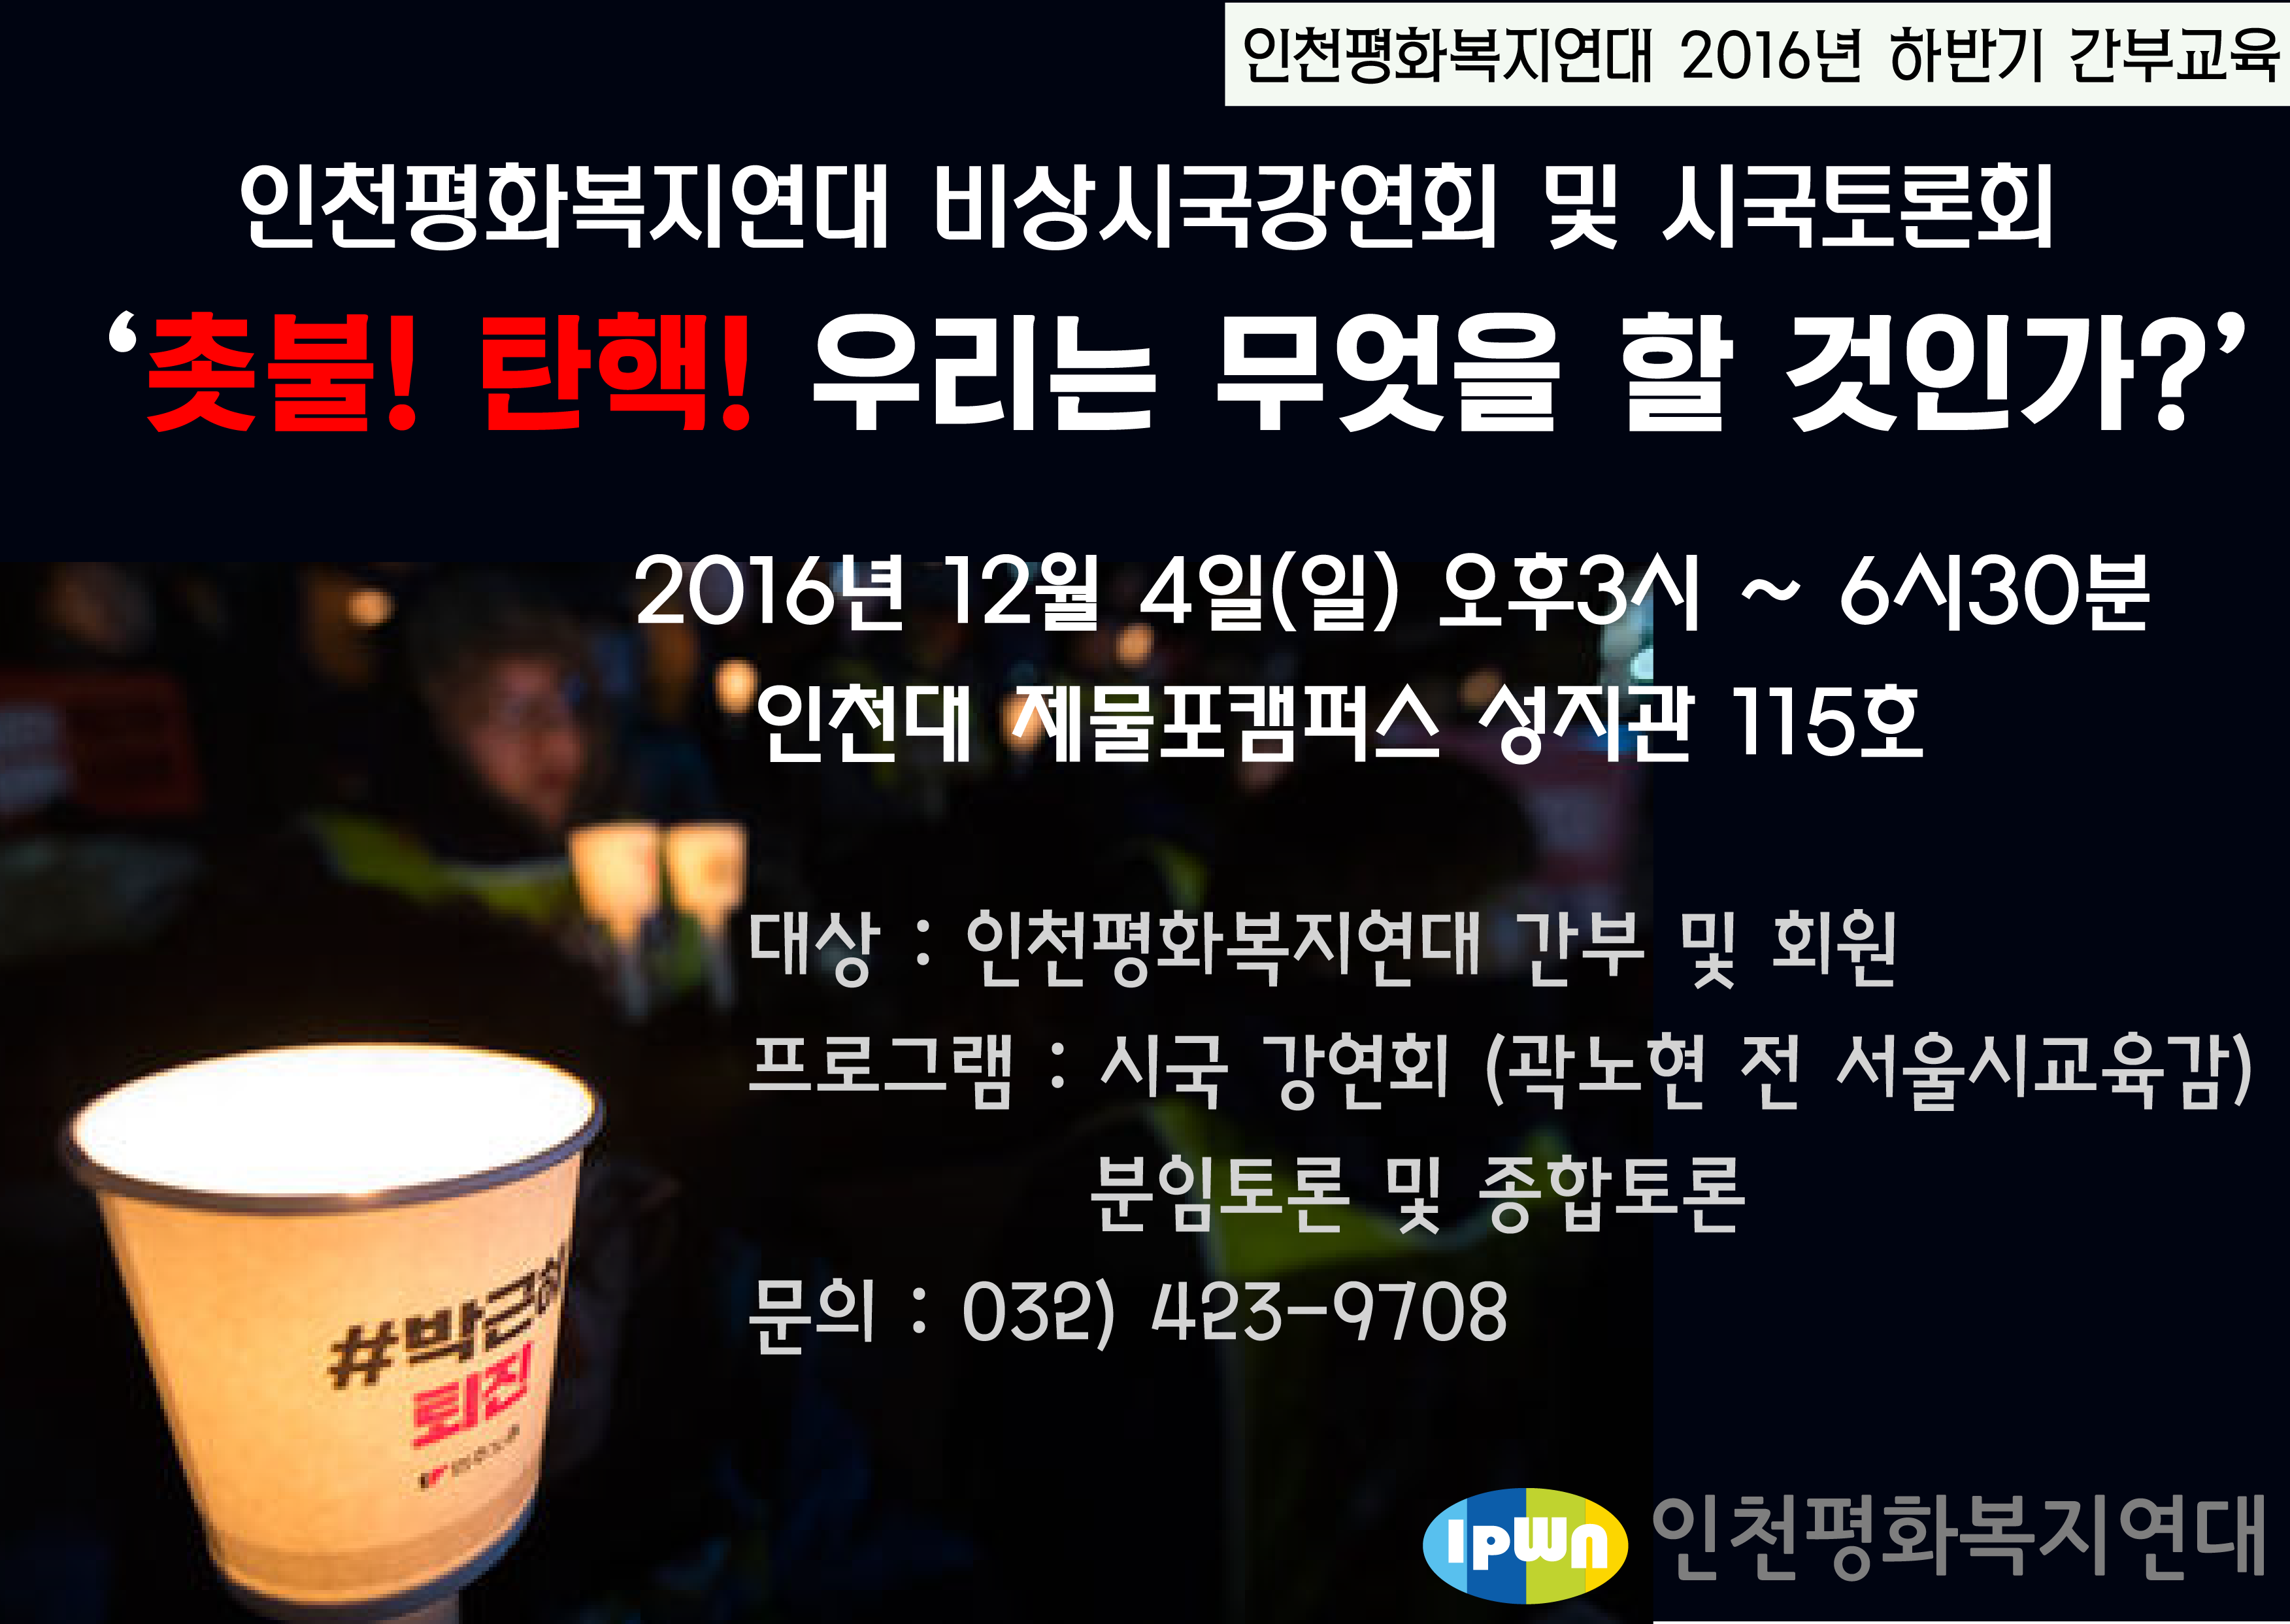 사본 -2016 인천평화복지연대 간부교육 안내.png